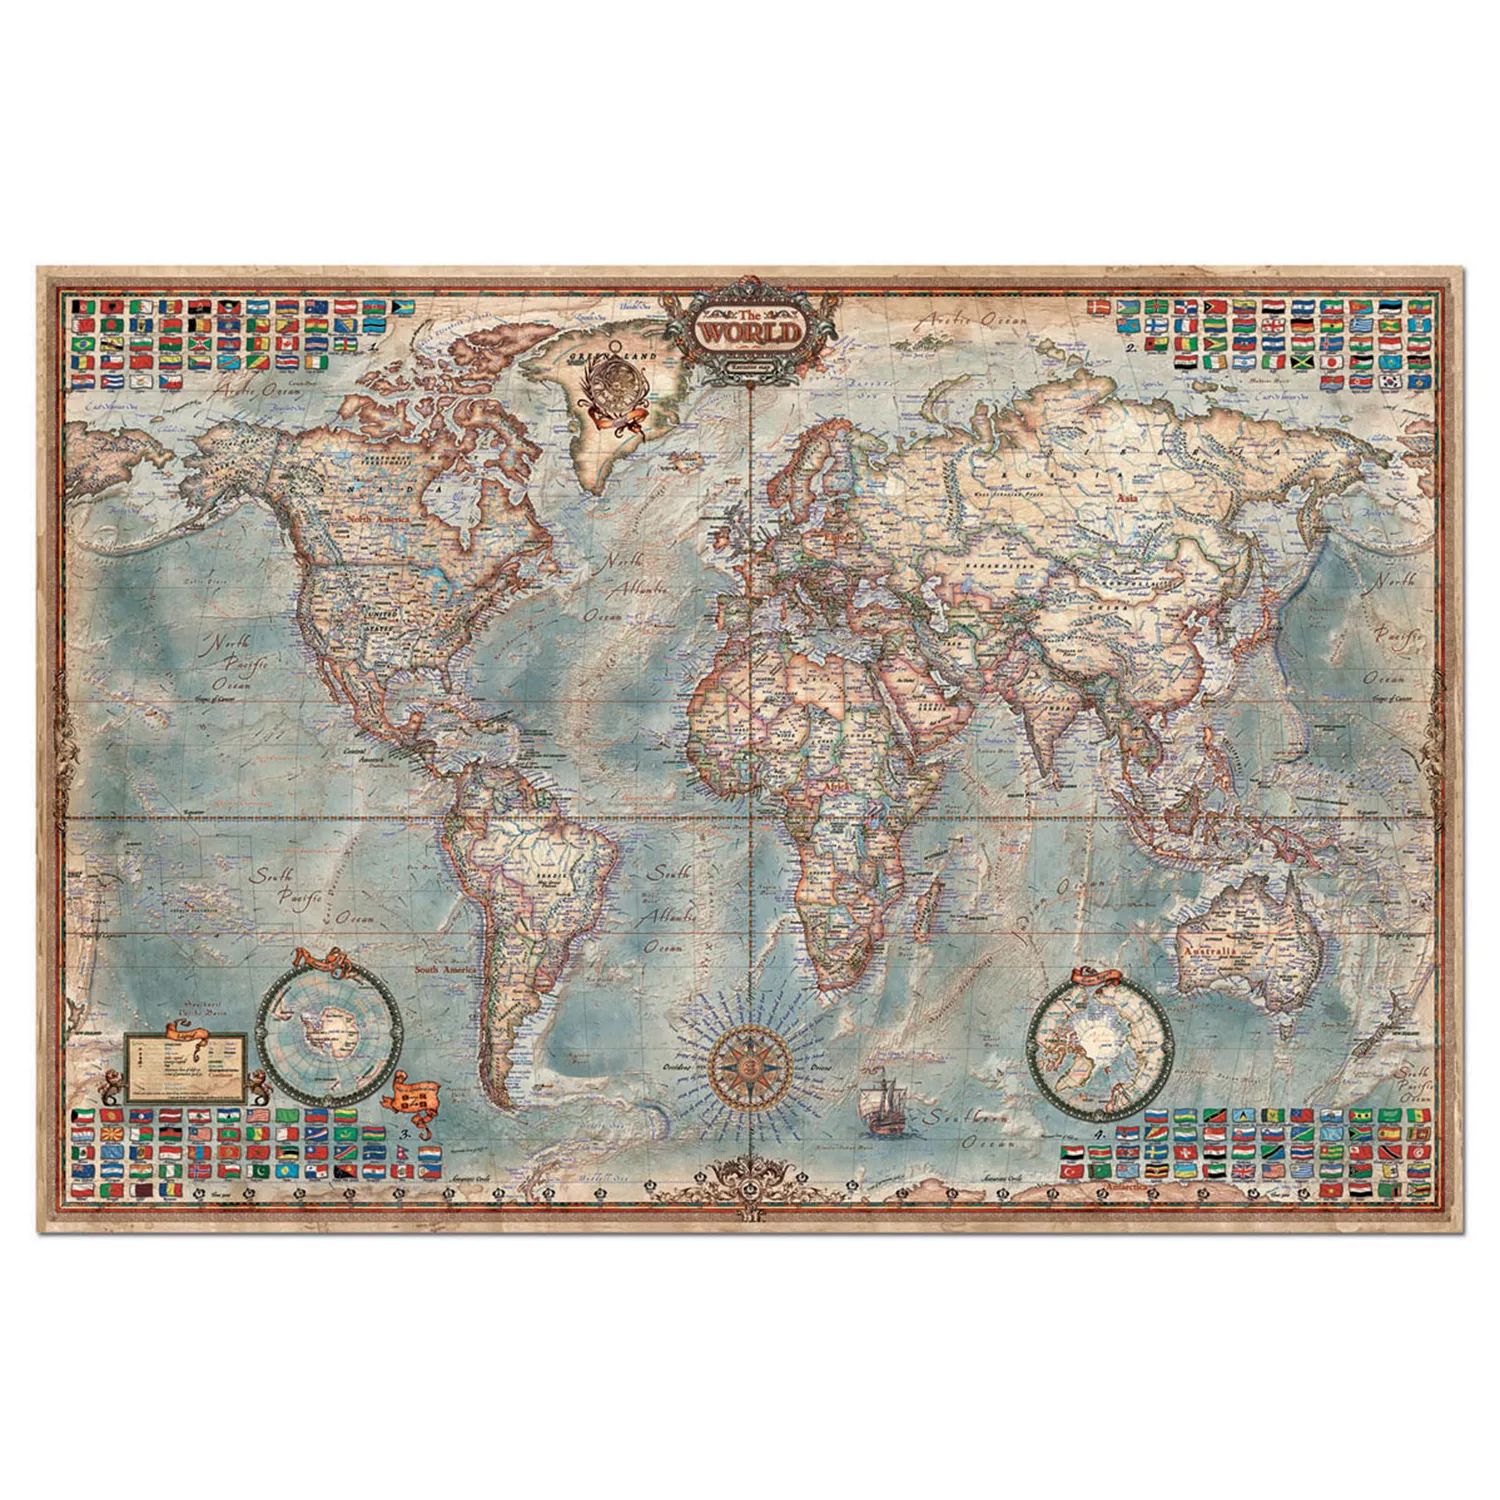 Educa Карта мира, 4000 шт. Пазл EDUCA пазл educa историческая карта мира 18017 8000 дет